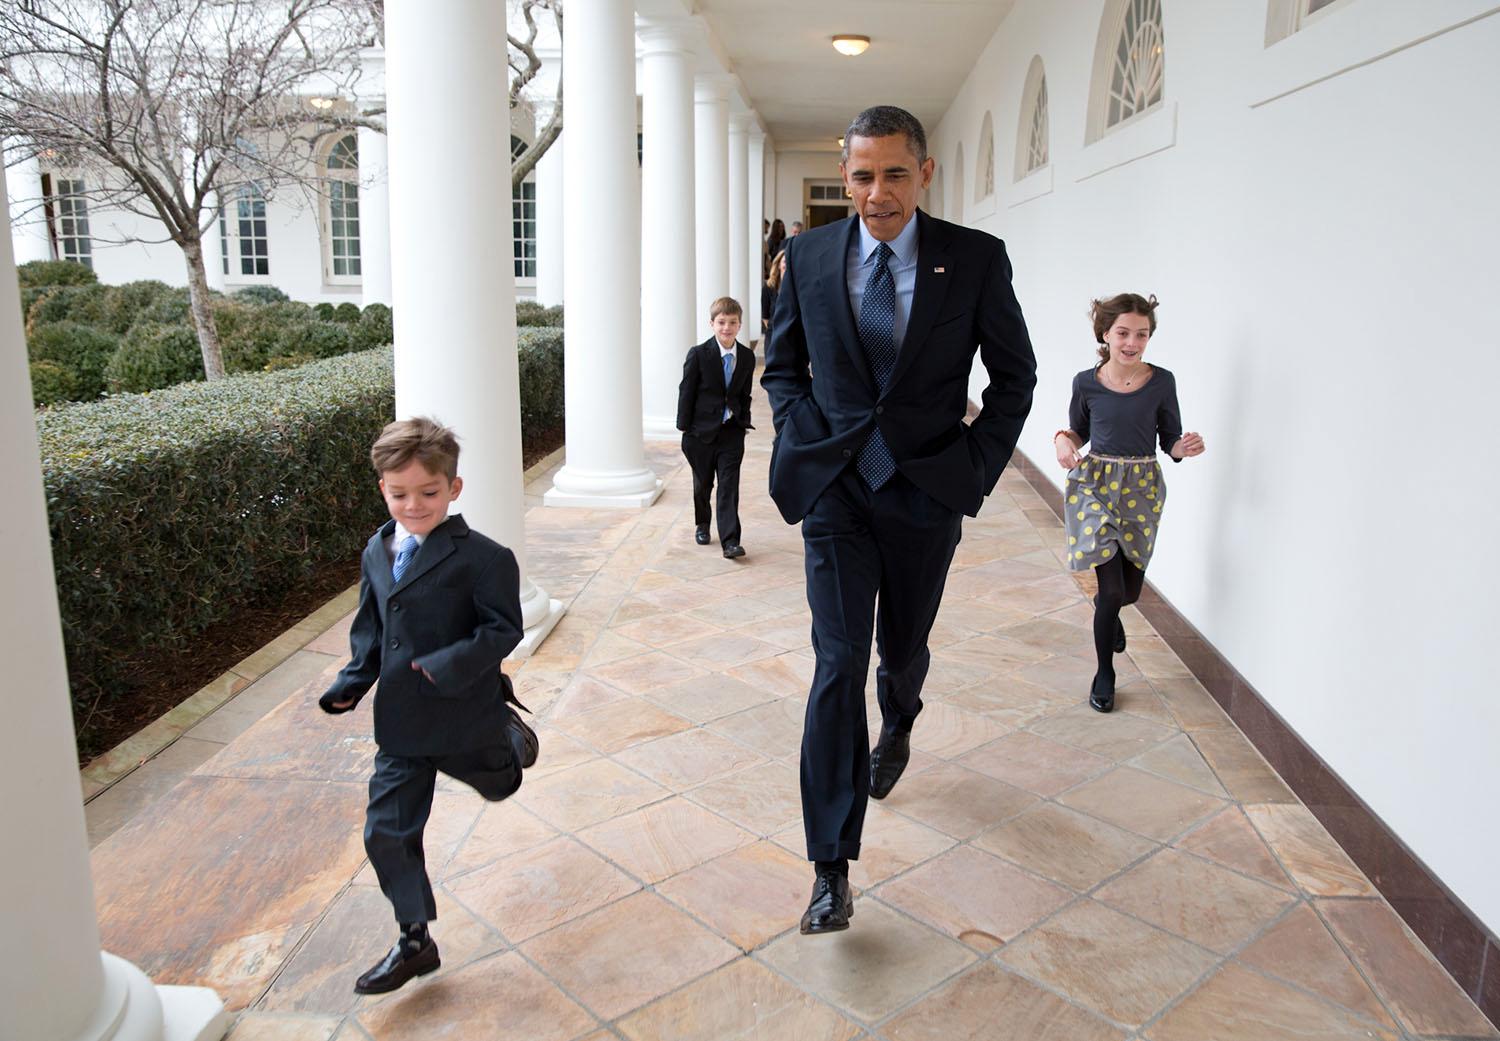 Pete Souzas kommentar: ”En kall dag i januari 2013. Presidenten springer i kapp med Denis ­McDonoughs barn ­mellan Vita husets kolonner för att tillkännage att Denis ska bli ny stabschef.”